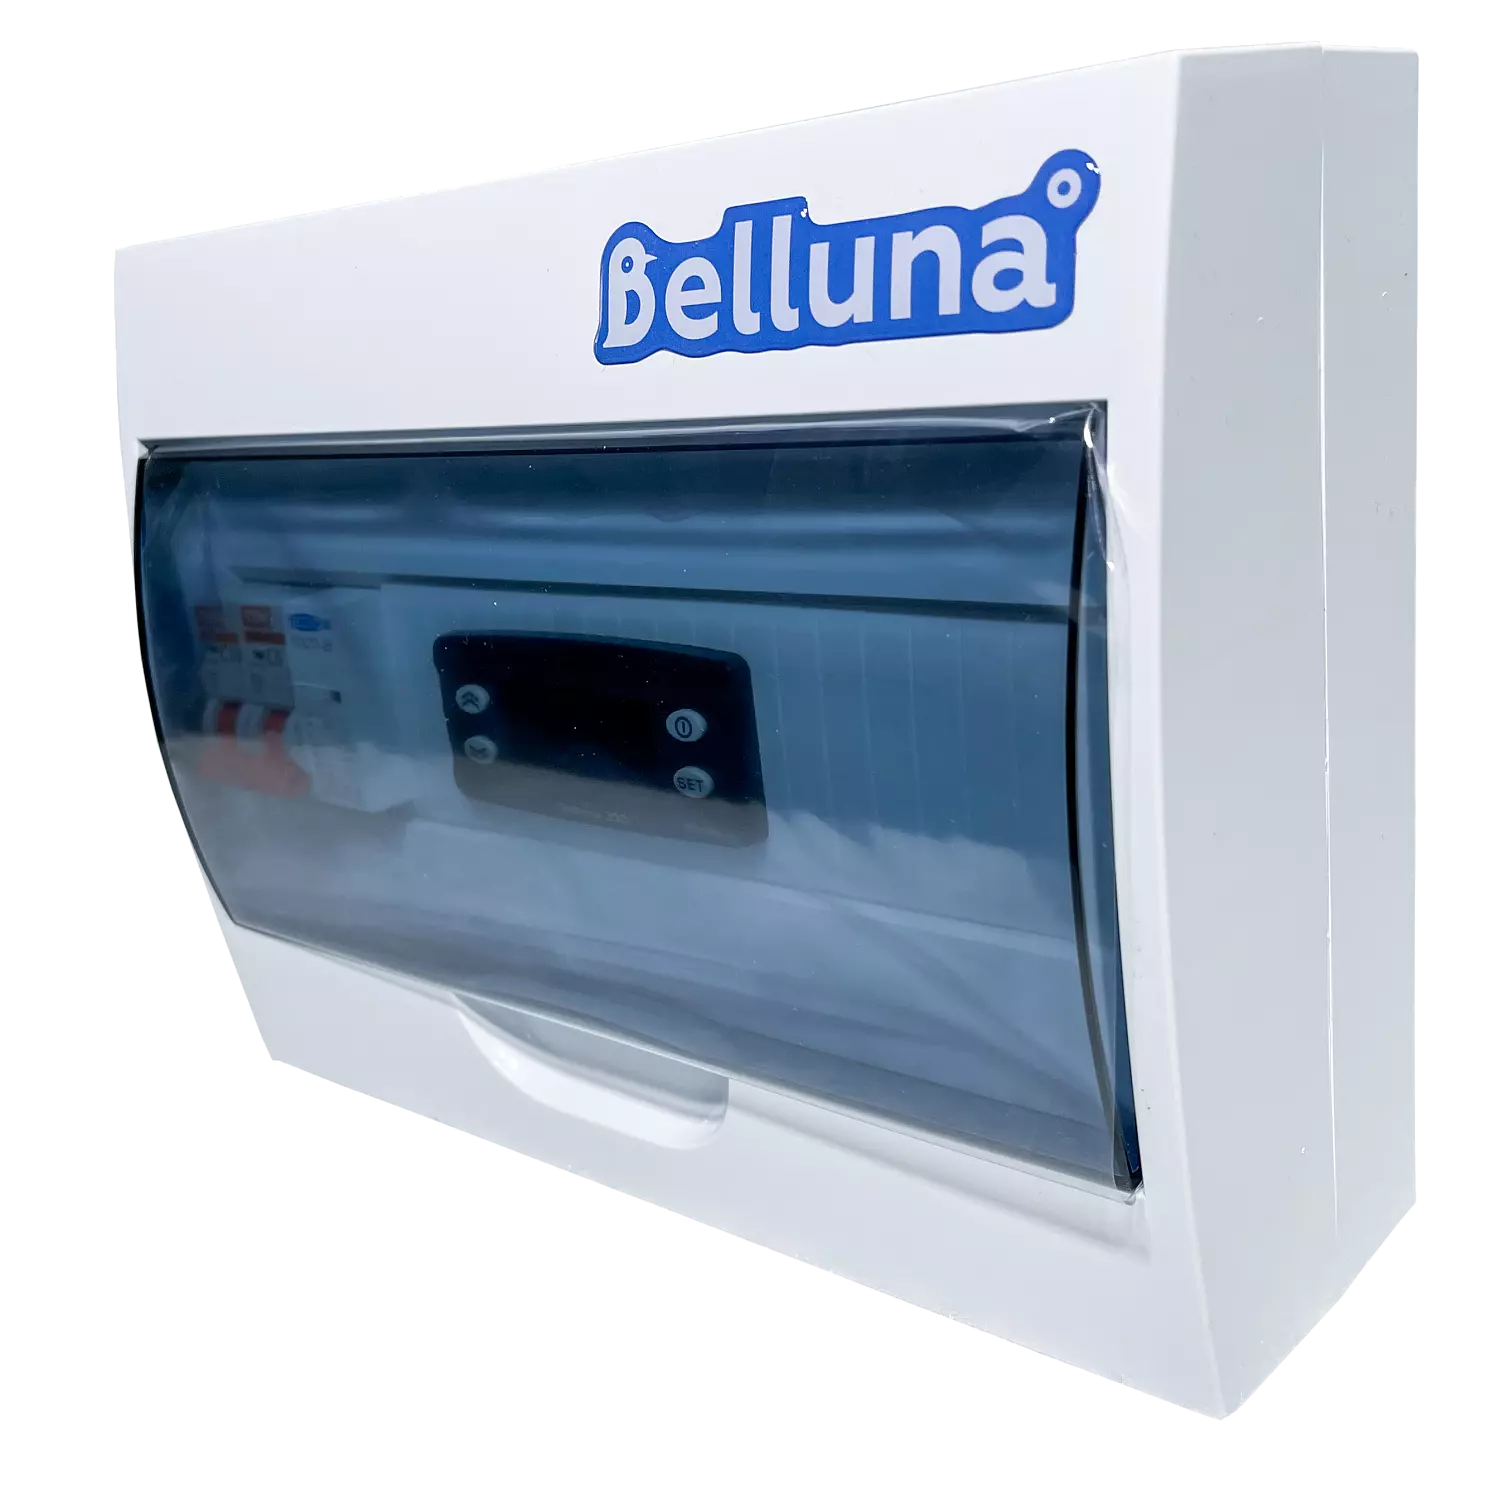 сплит-система Belluna U102-1 Тамбов